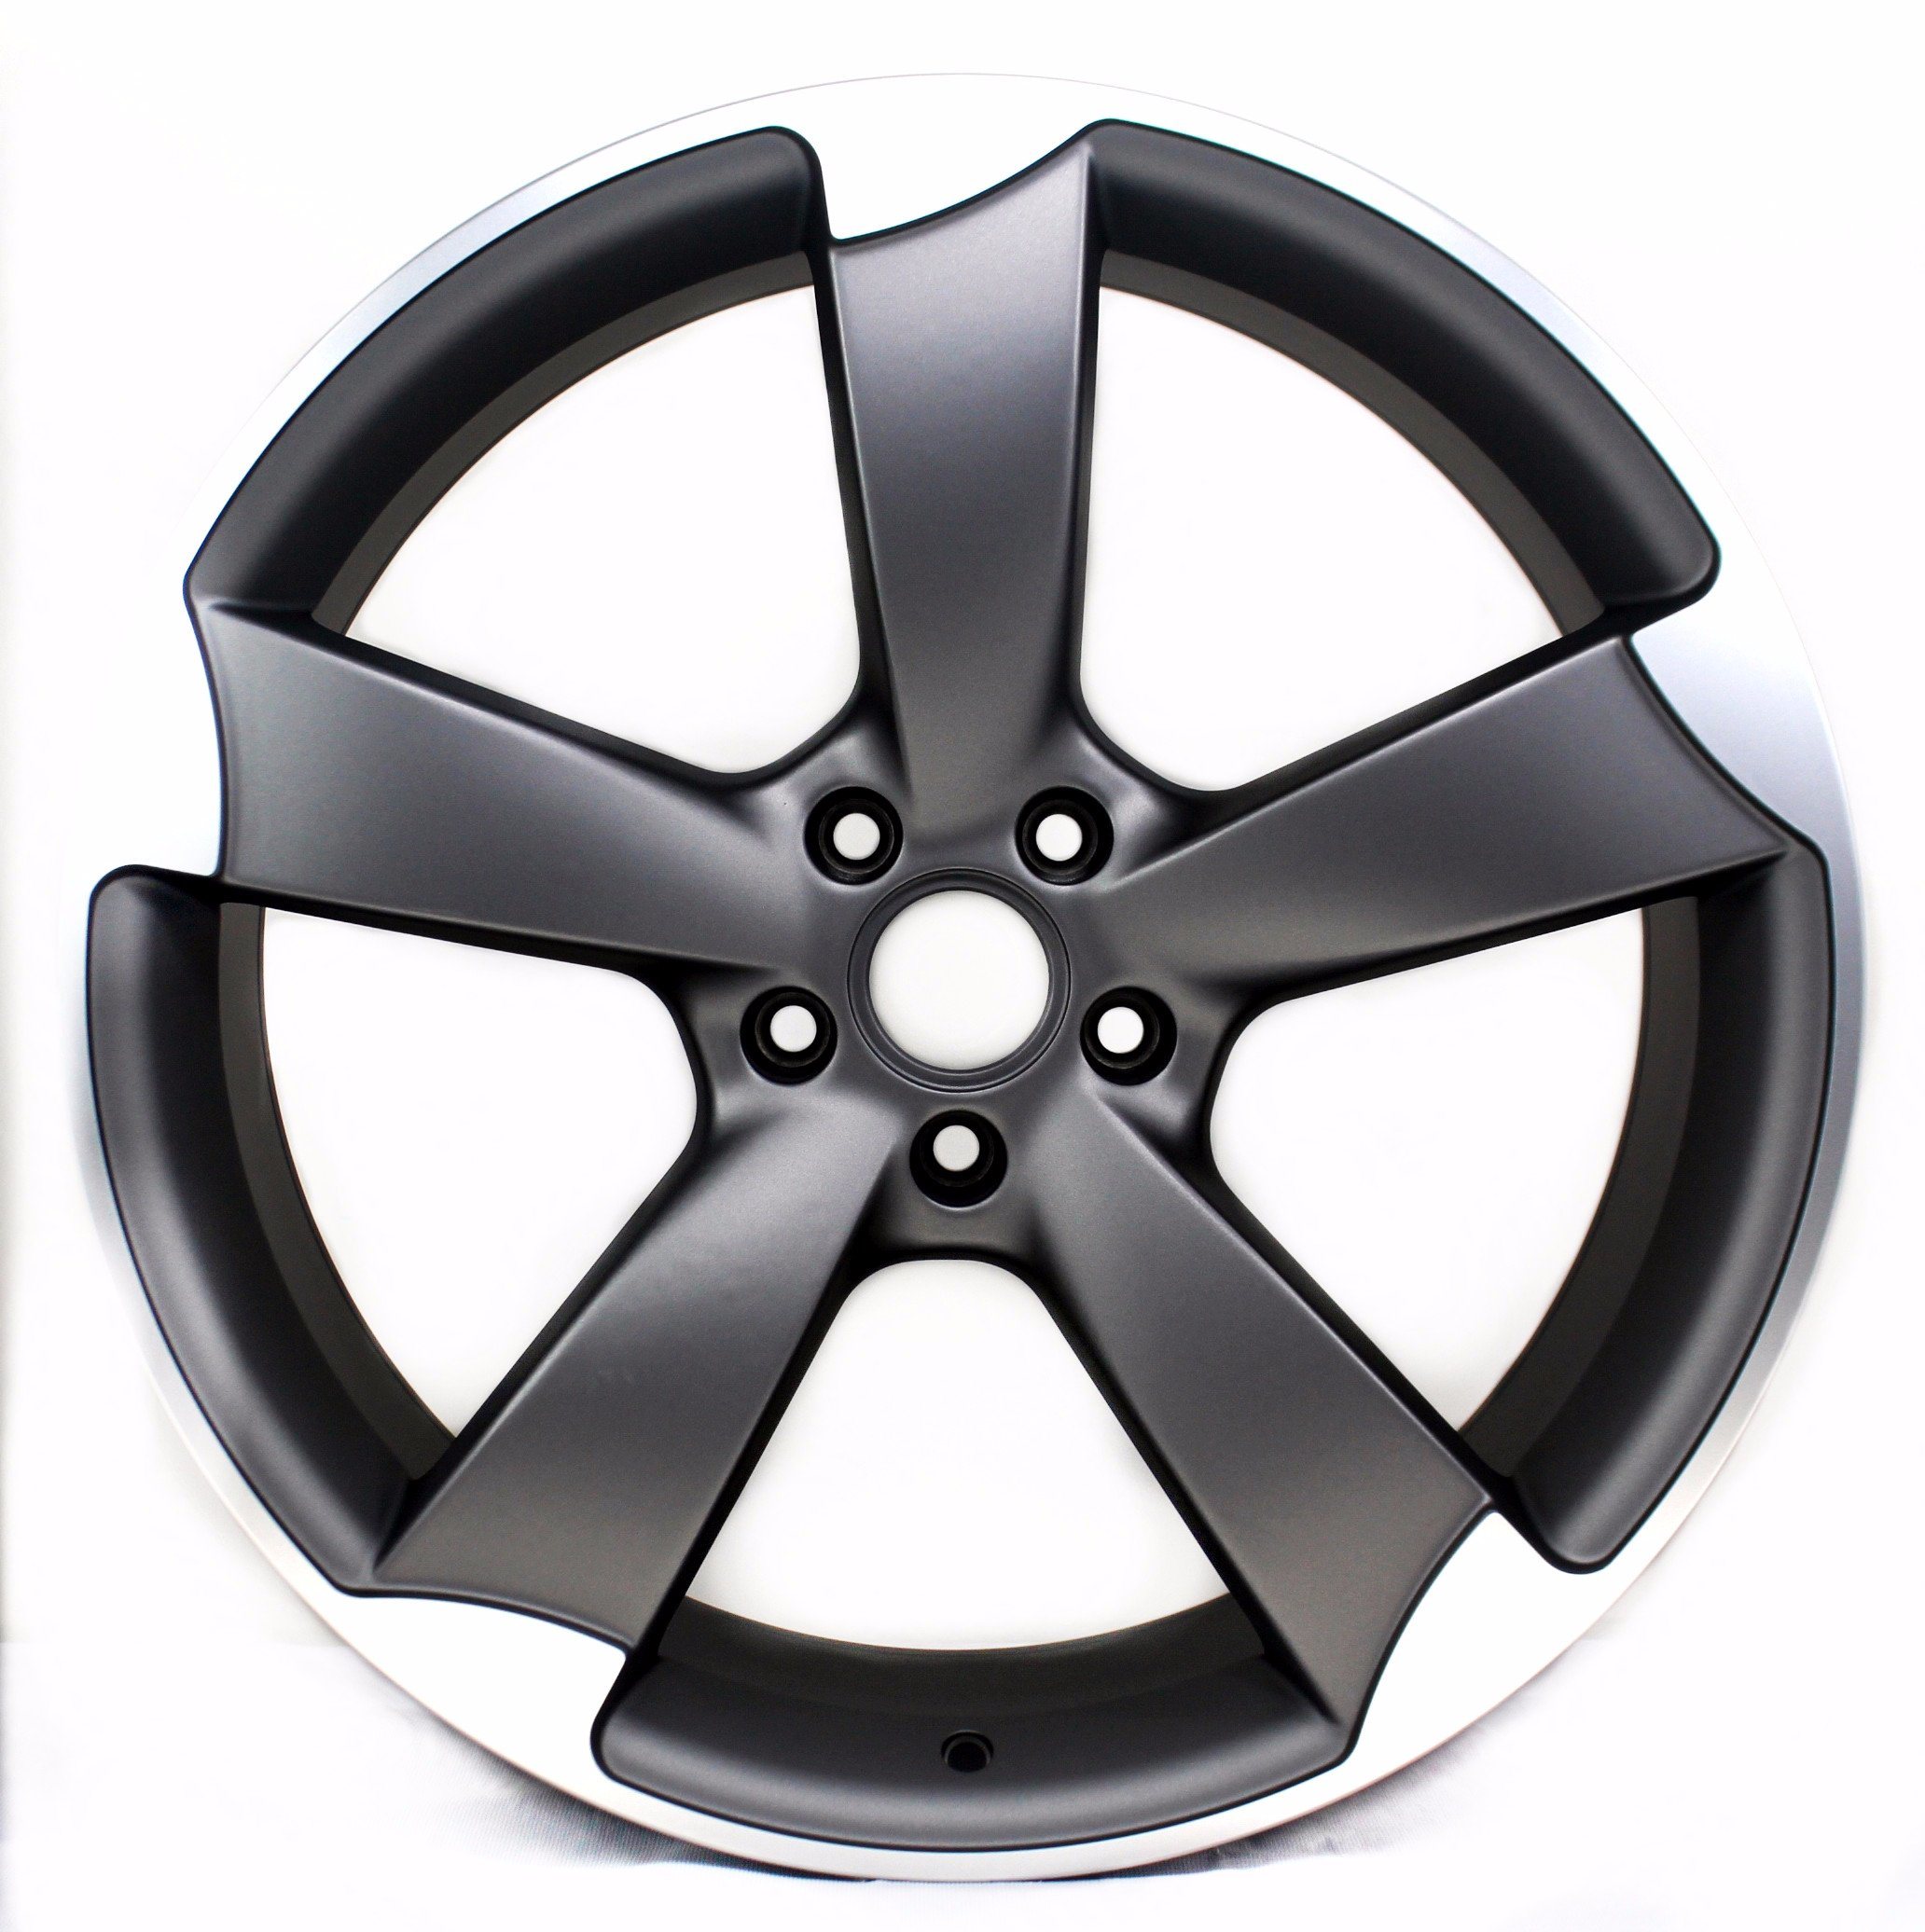 Hot Sale 19 /20 Inch Replica Mag Alloy Wheel Rims for Audi